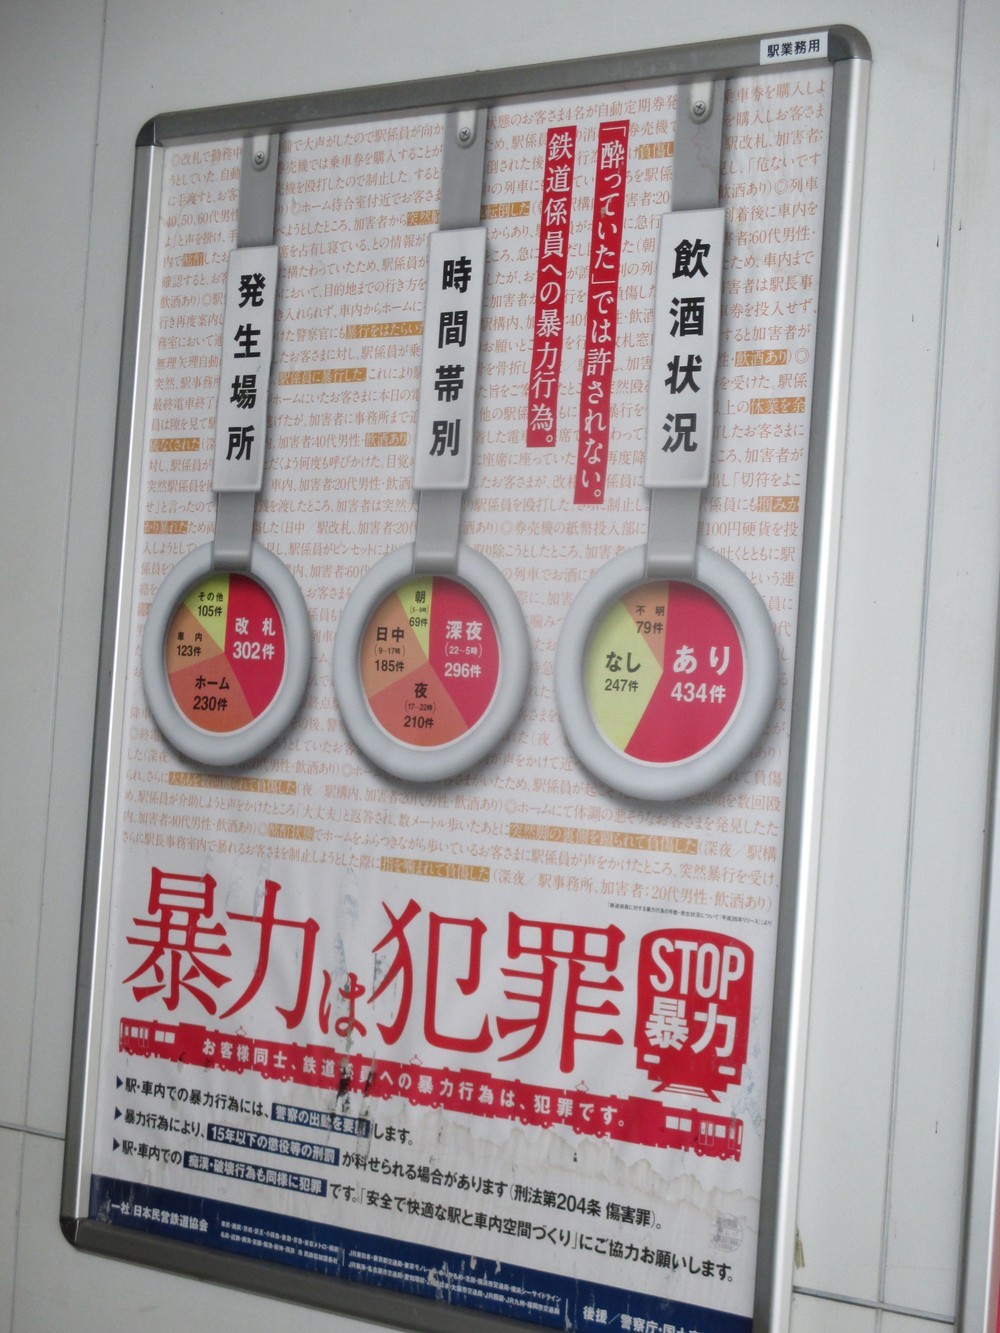 鉄道の駅には「STOP暴力」を訴えるポスターが貼られている。
